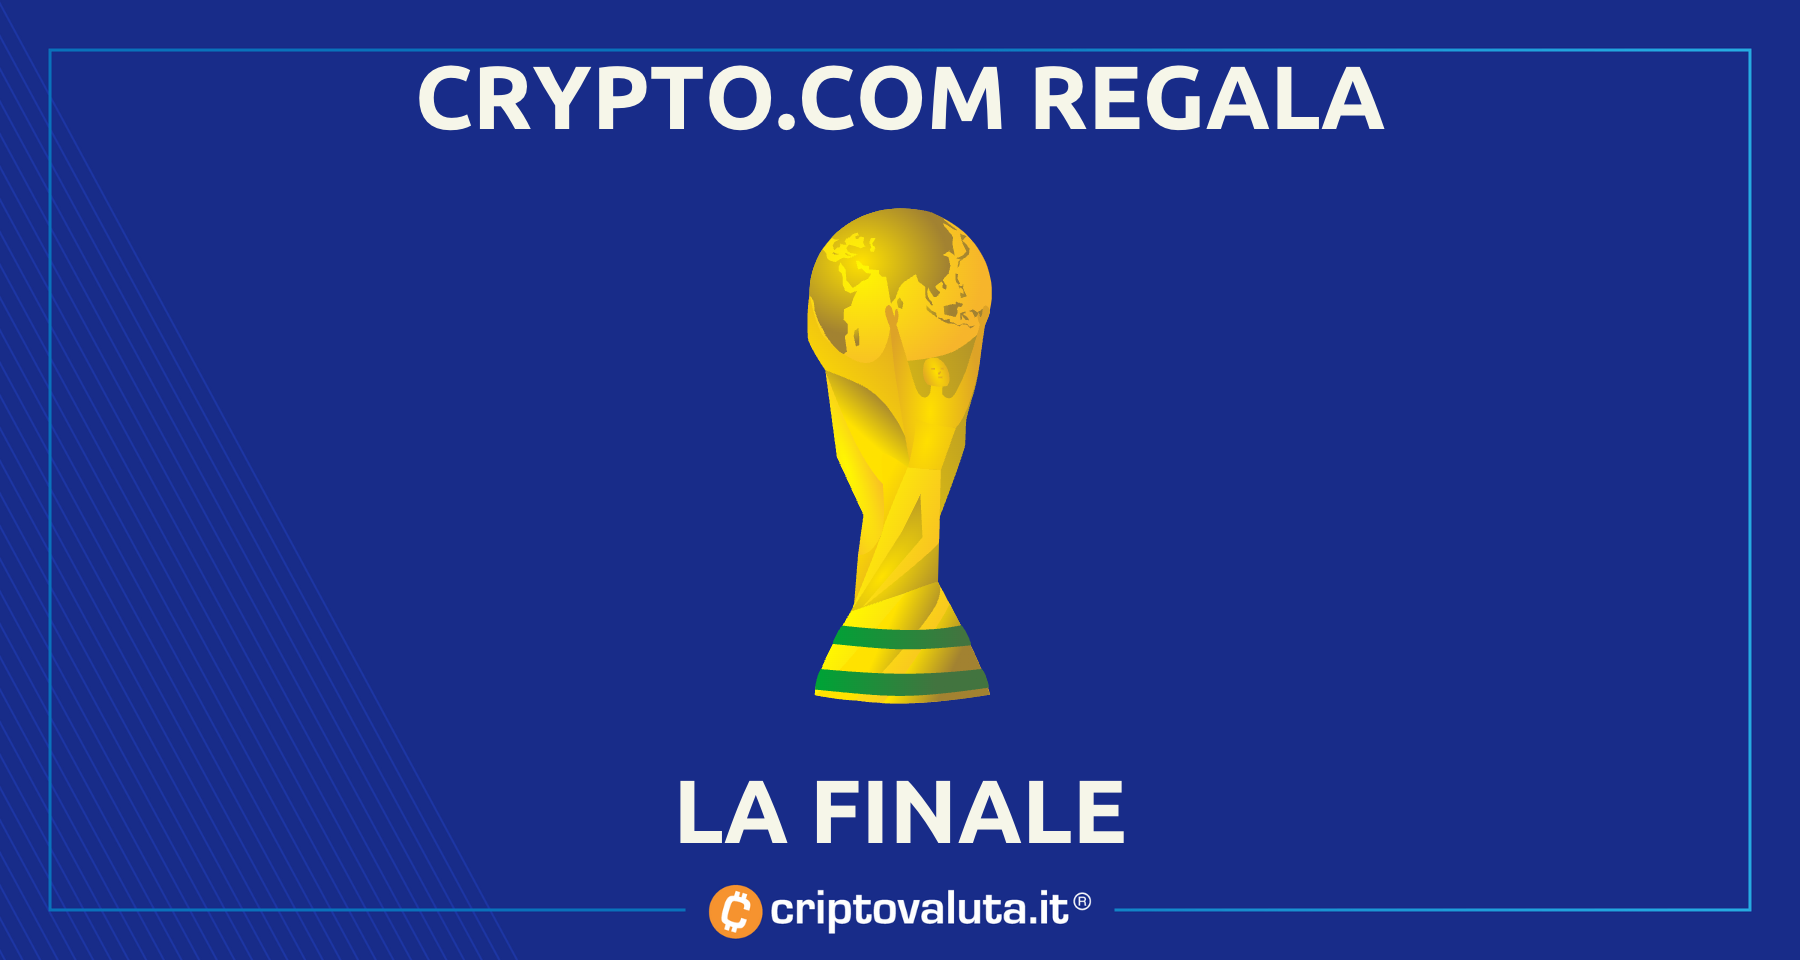 Crypto.com regala la finale del mondiale | Come partecipare